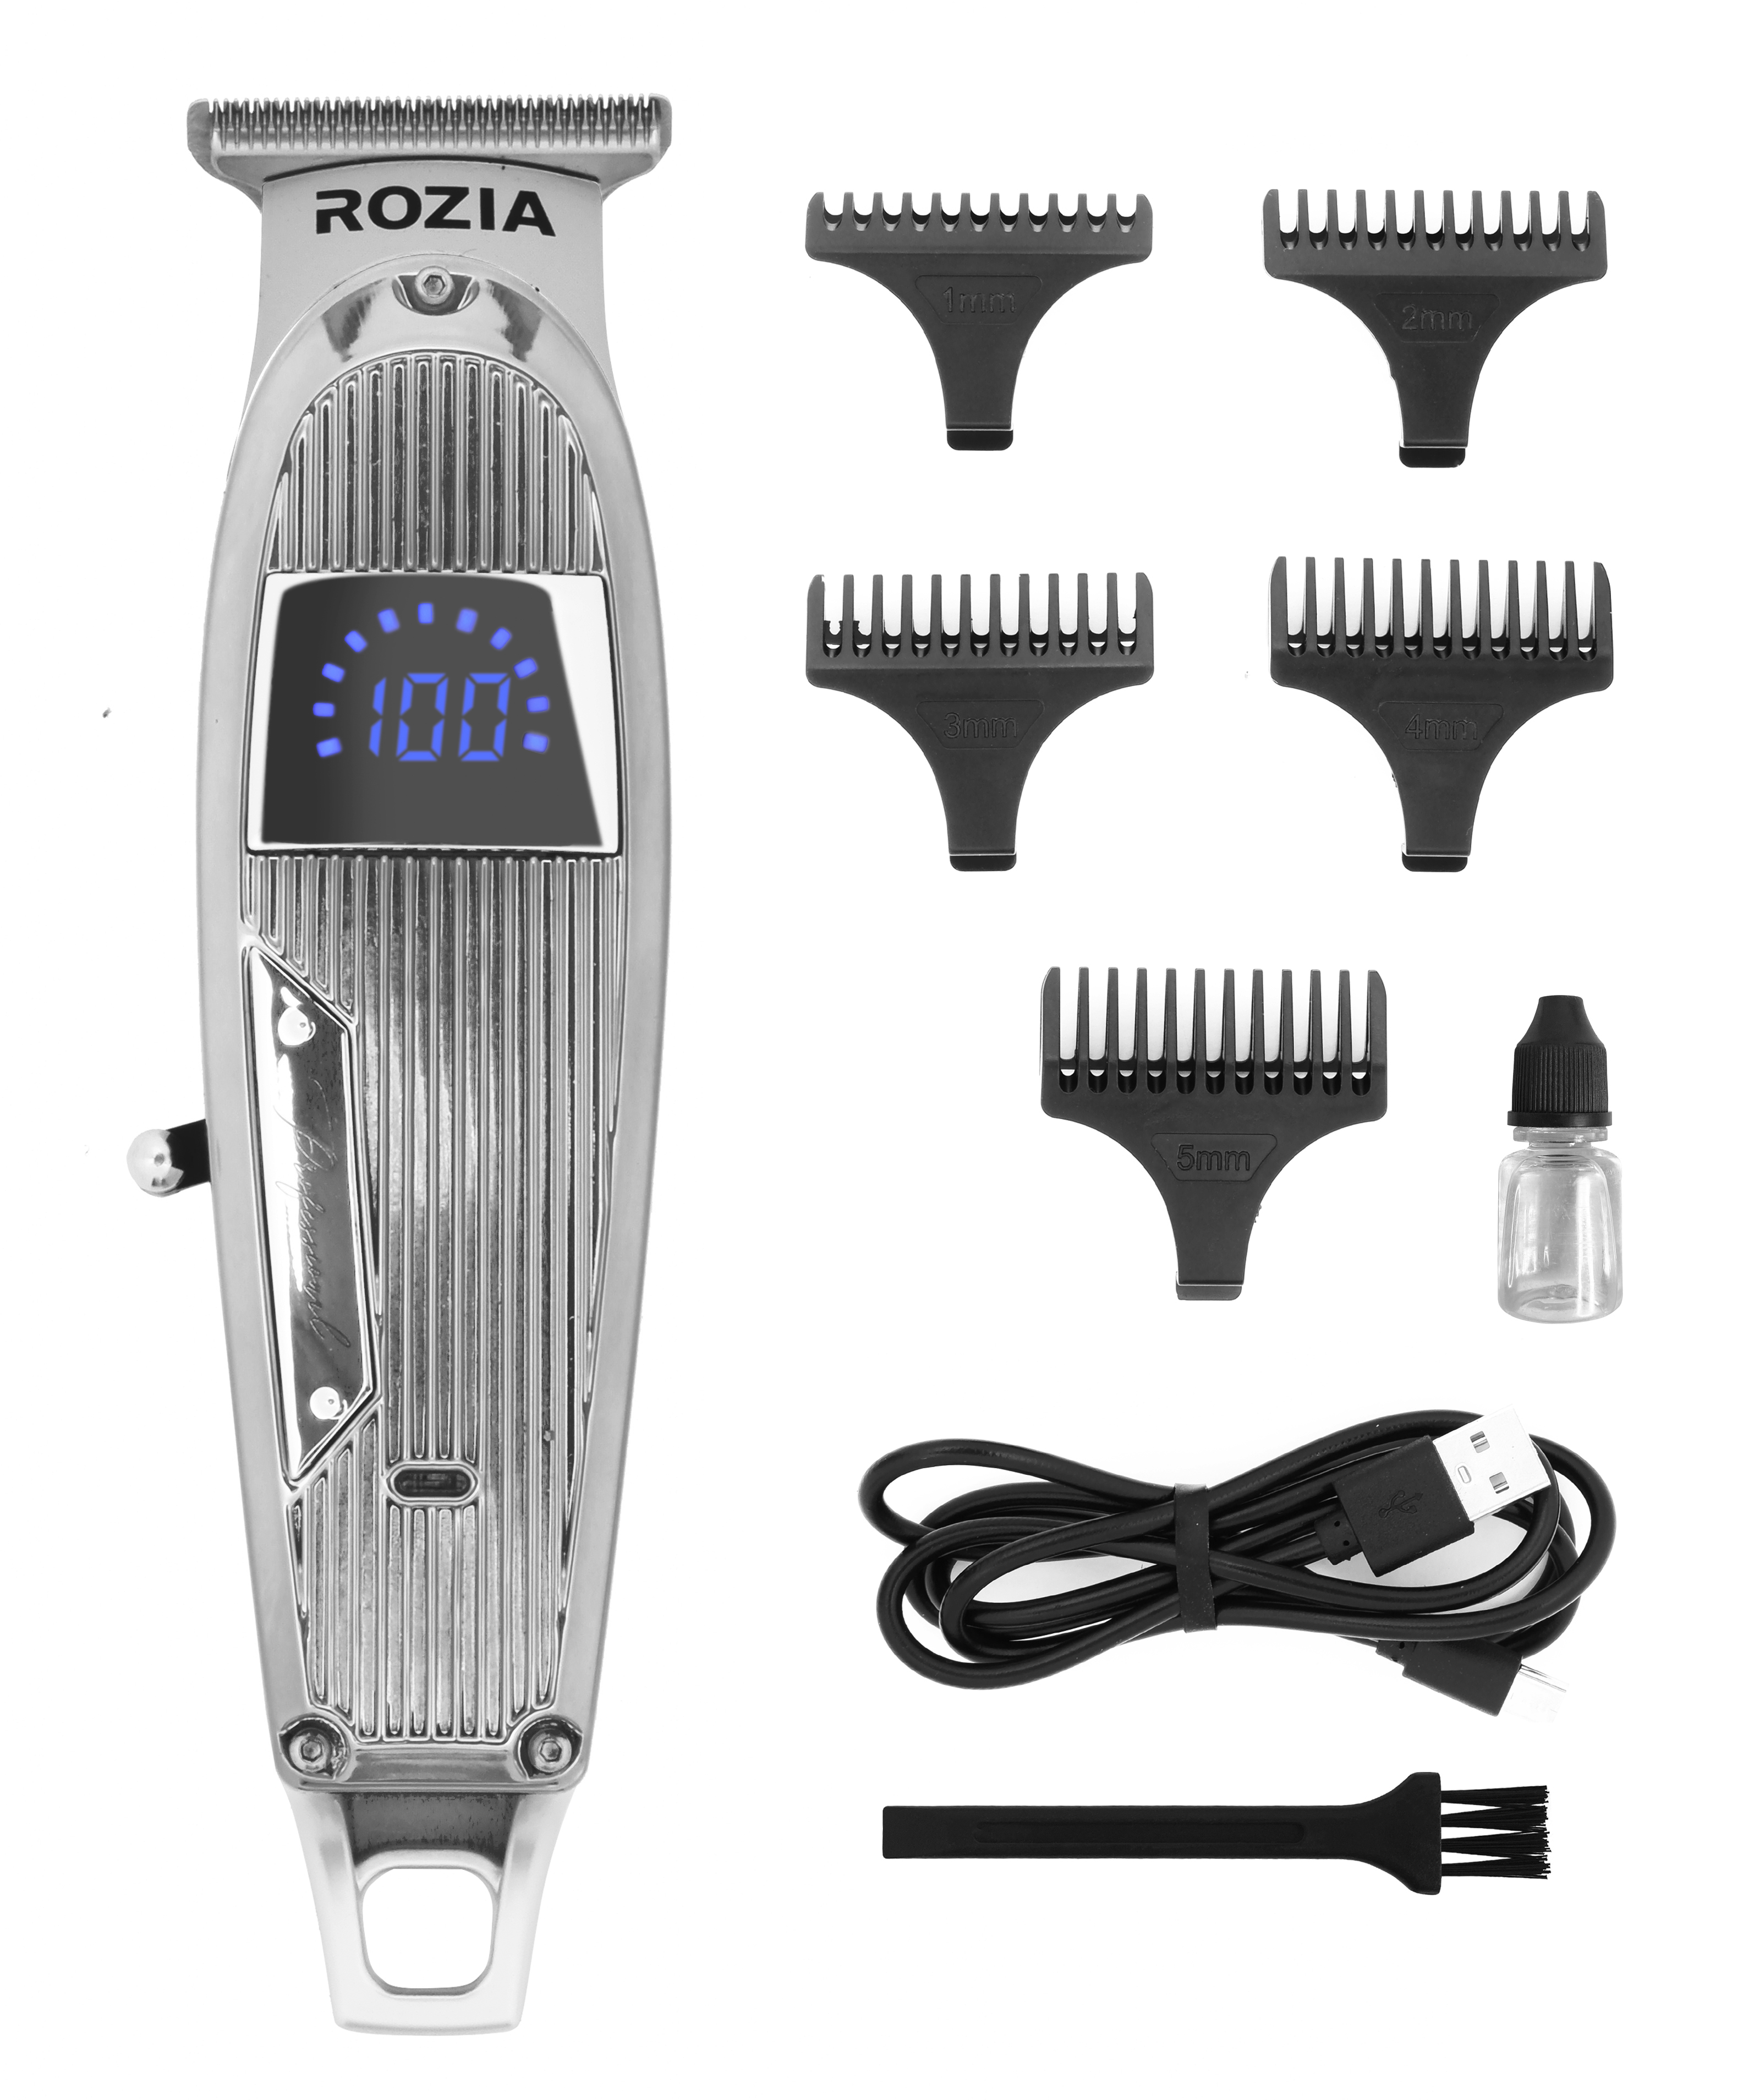 Машинка для стрижки волос Rozia HQ-321 серебристая машинка для стрижки волос rozia hq 2225 серебристая